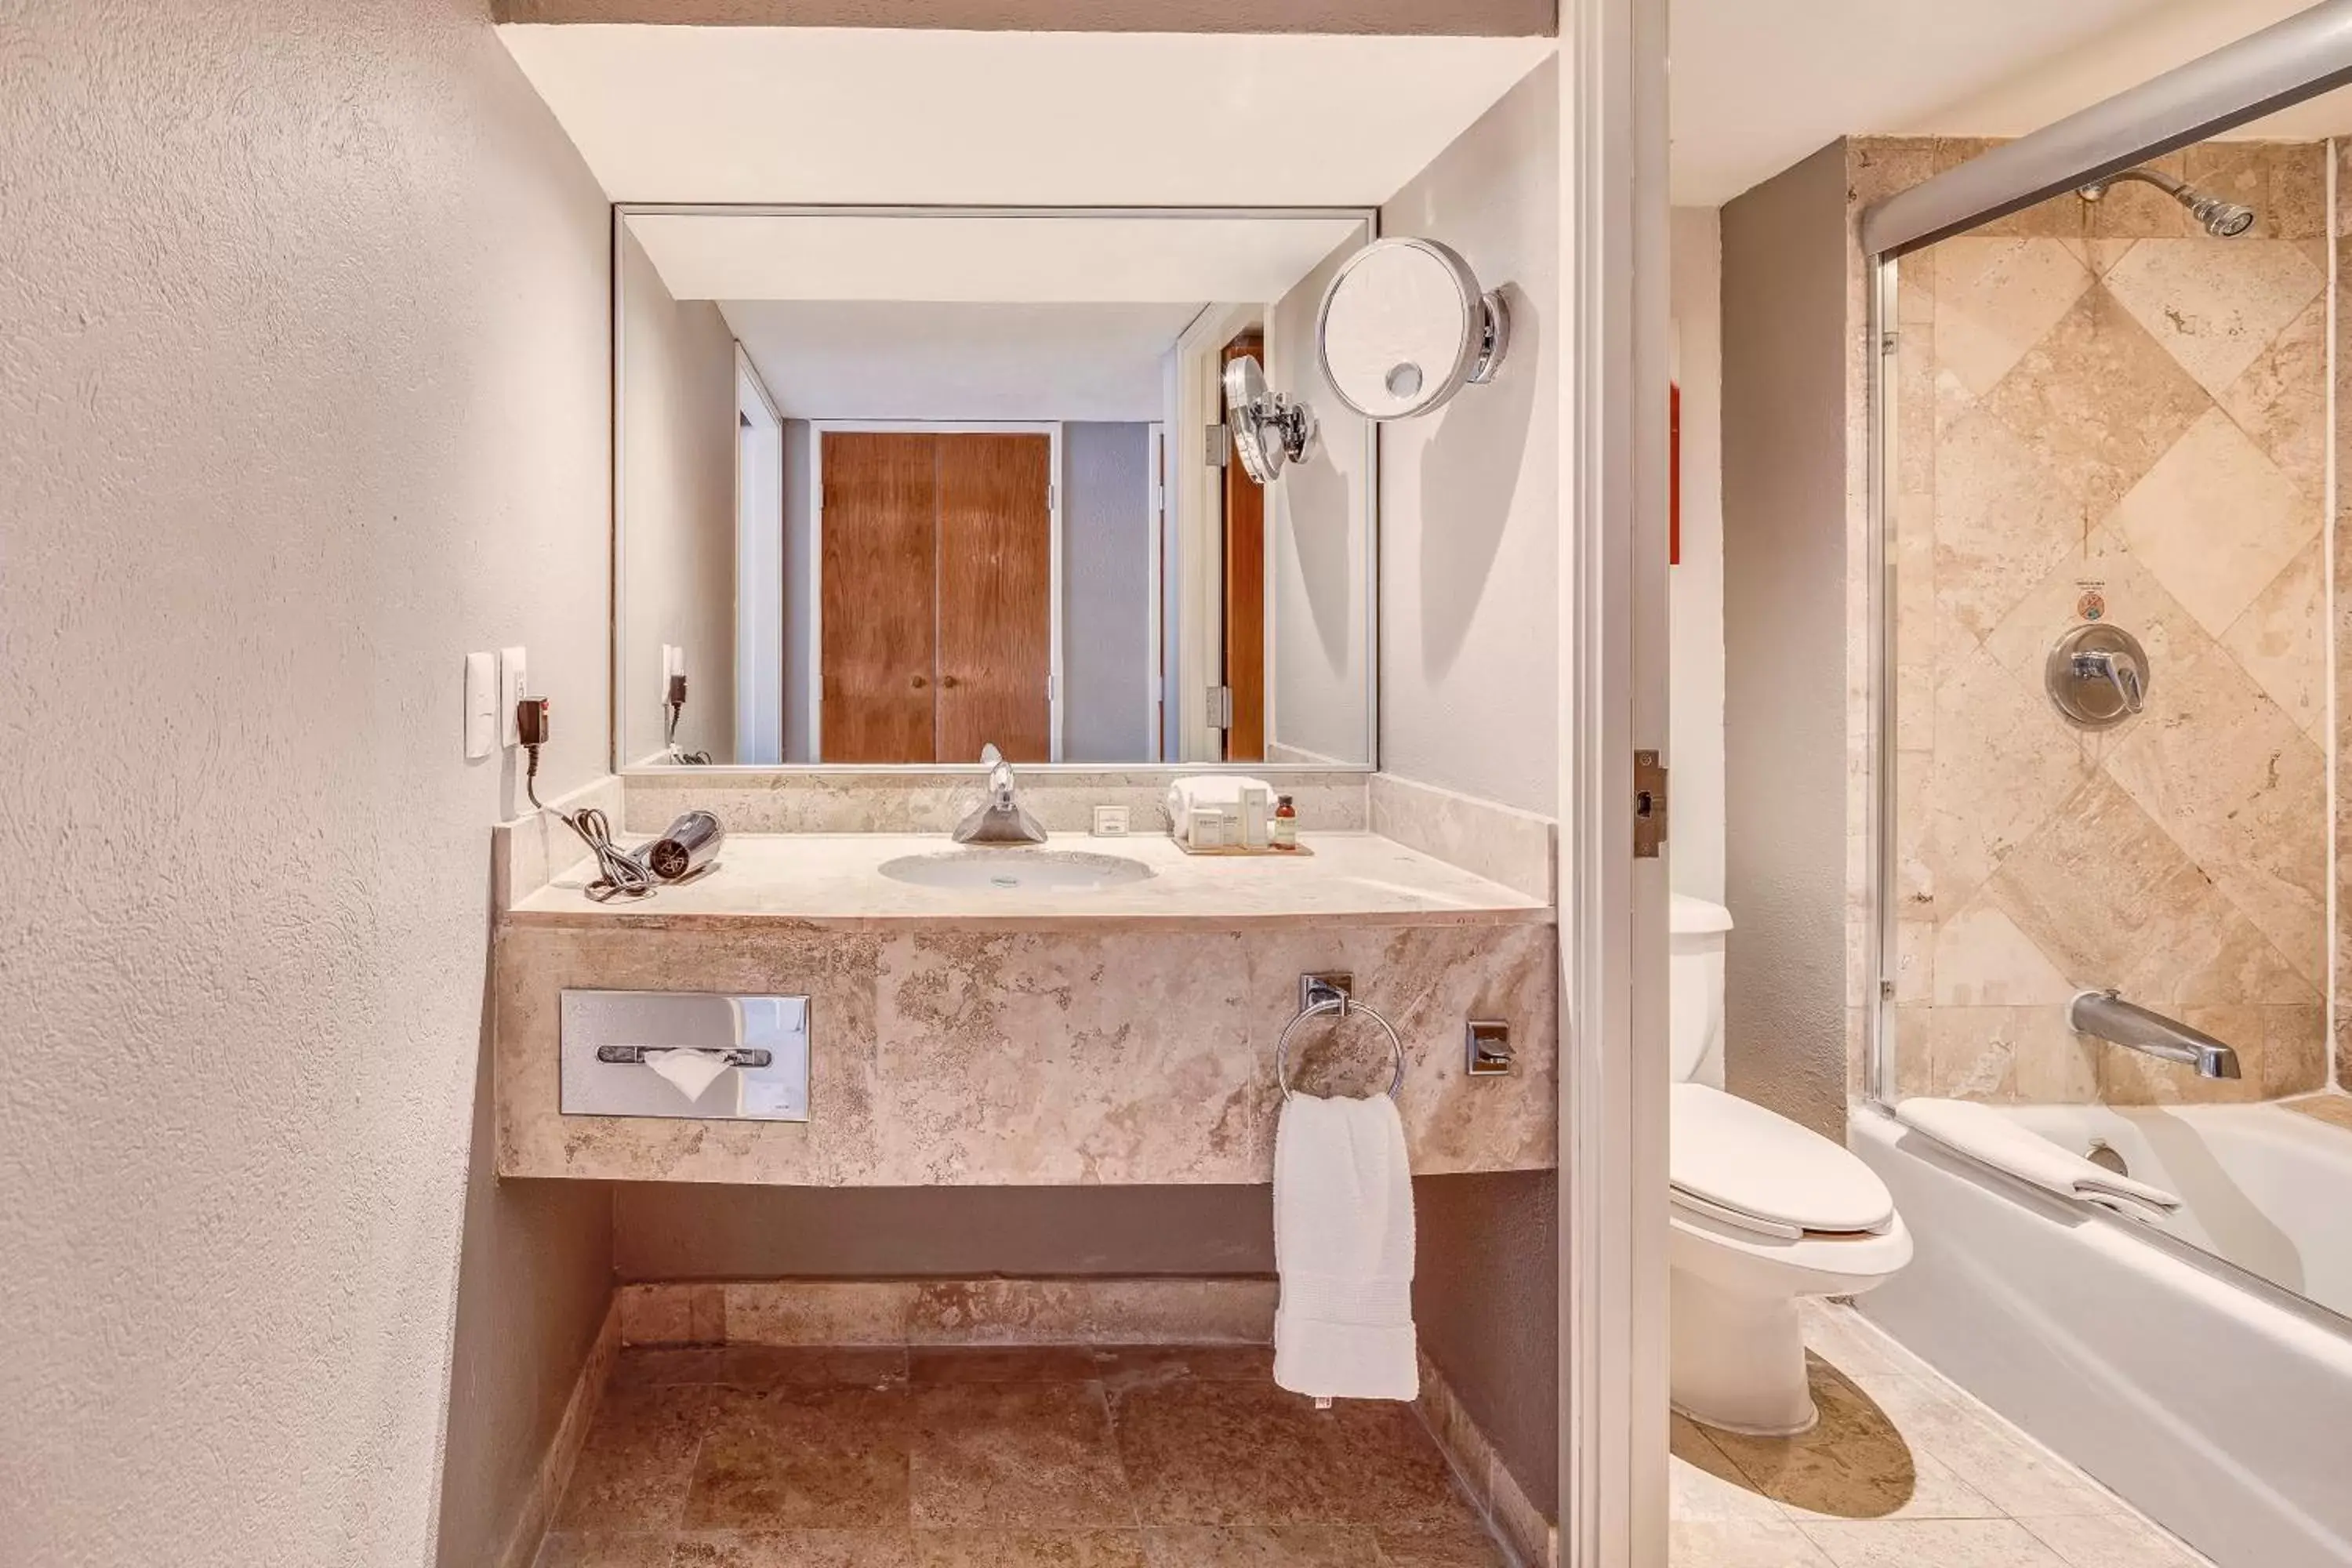 Photo of the whole room, Bathroom in Fiesta Americana Acapulco Villas